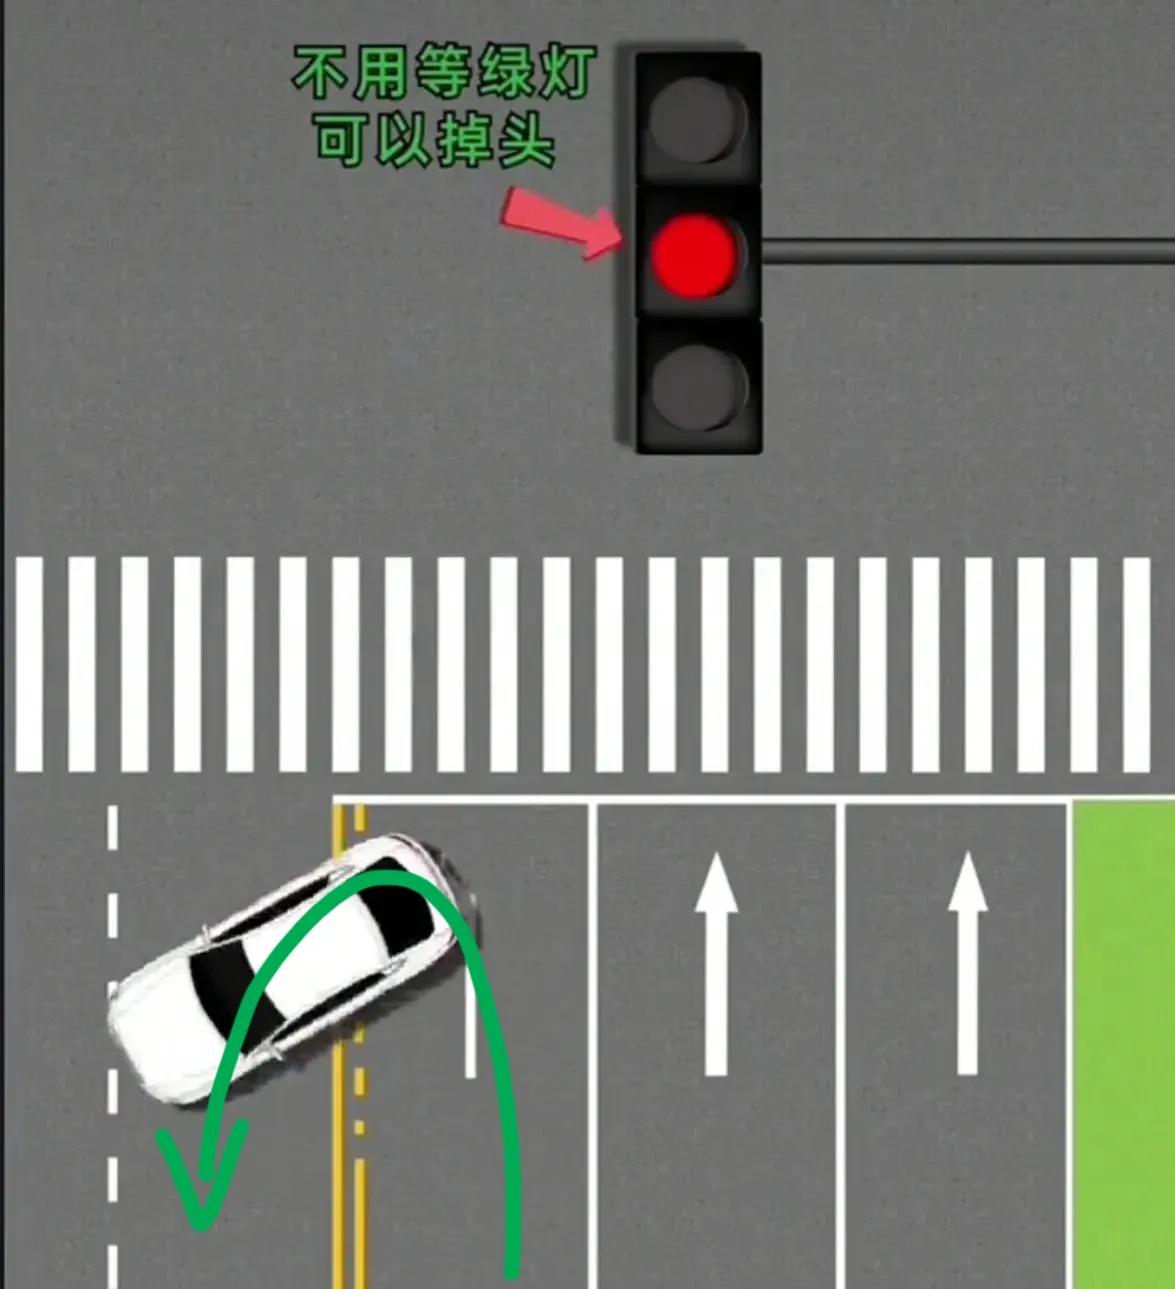 学会这7种掉头，绿灯4种，红灯3种，再也不怕路口掉头